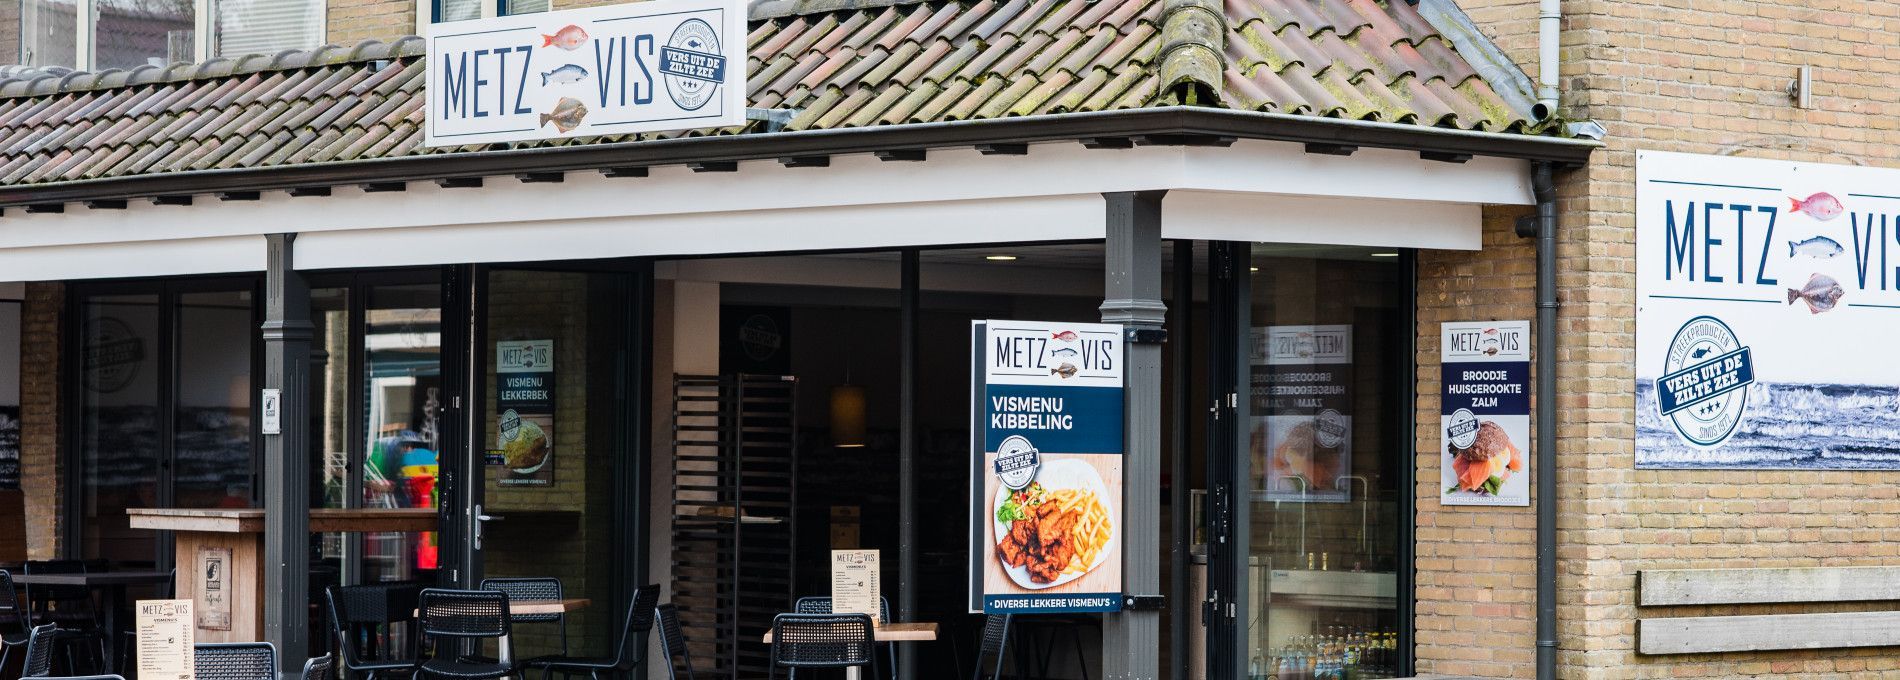 Fischhandel Metz Nes - VVV Ameland